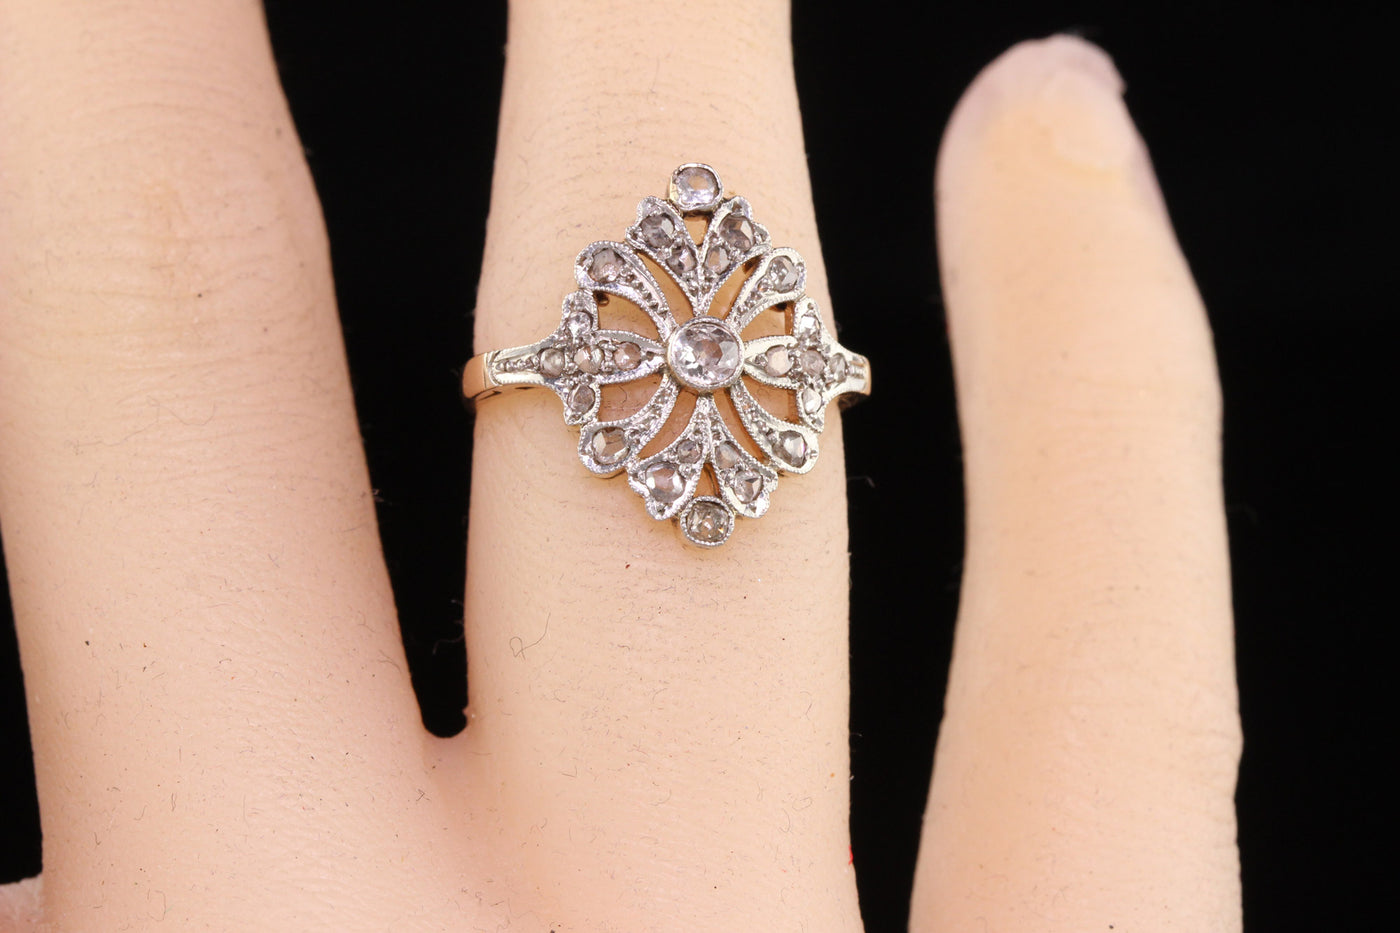 Antique Edwardian 18K Yellow Gold Platinum Rose Cut Diamond Filigree Ring